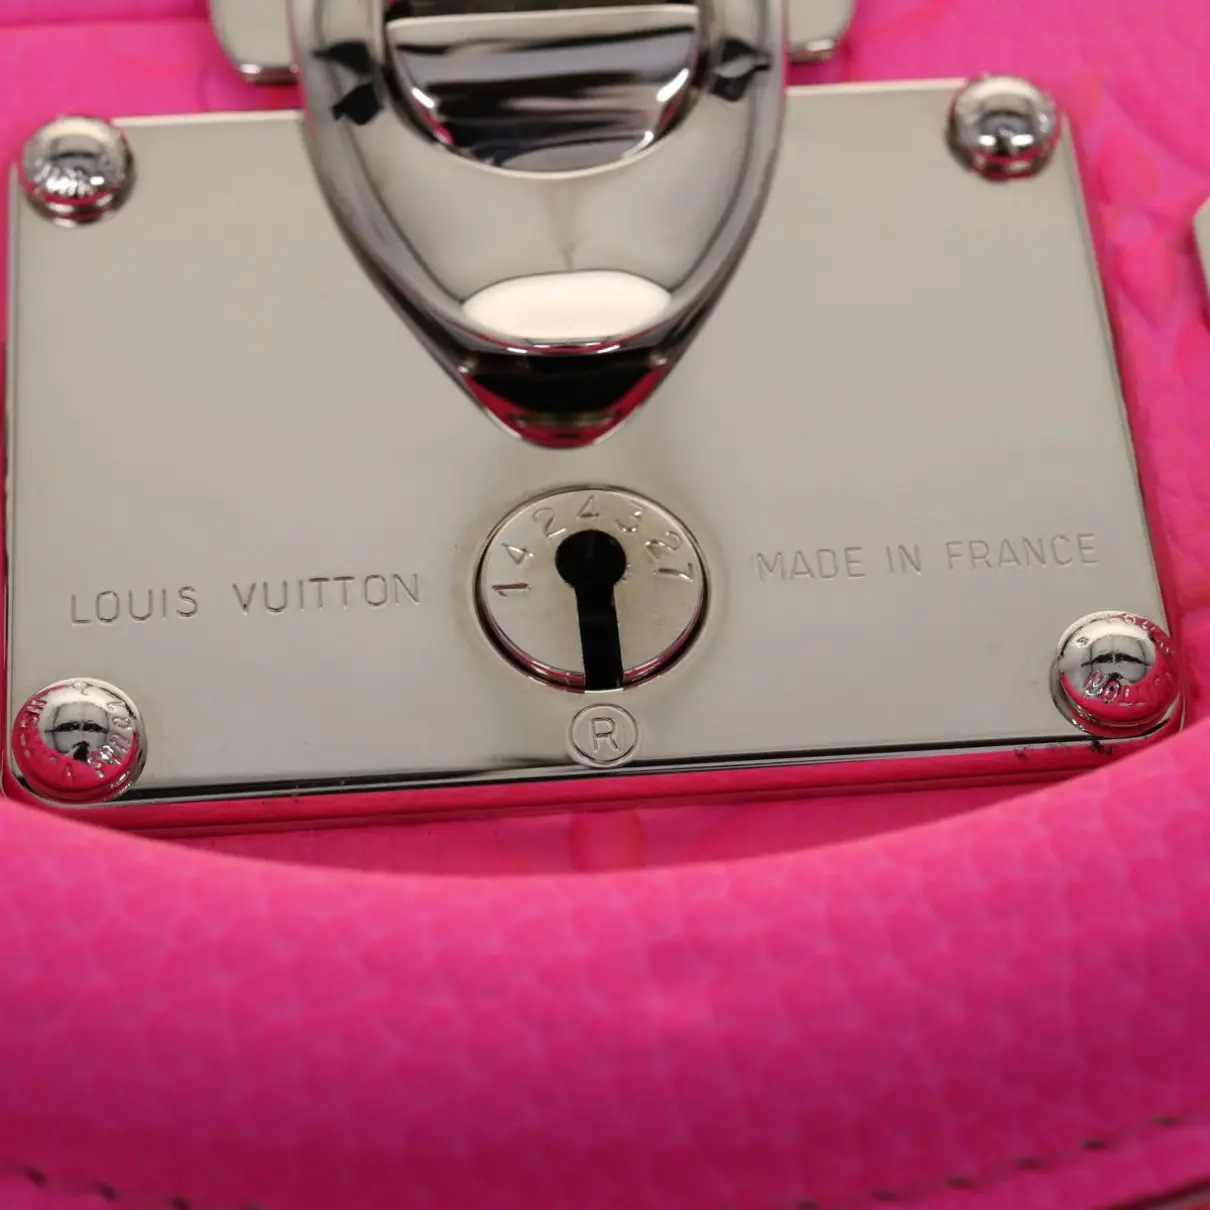 Cotteville leather travel bag Louis Vuitton